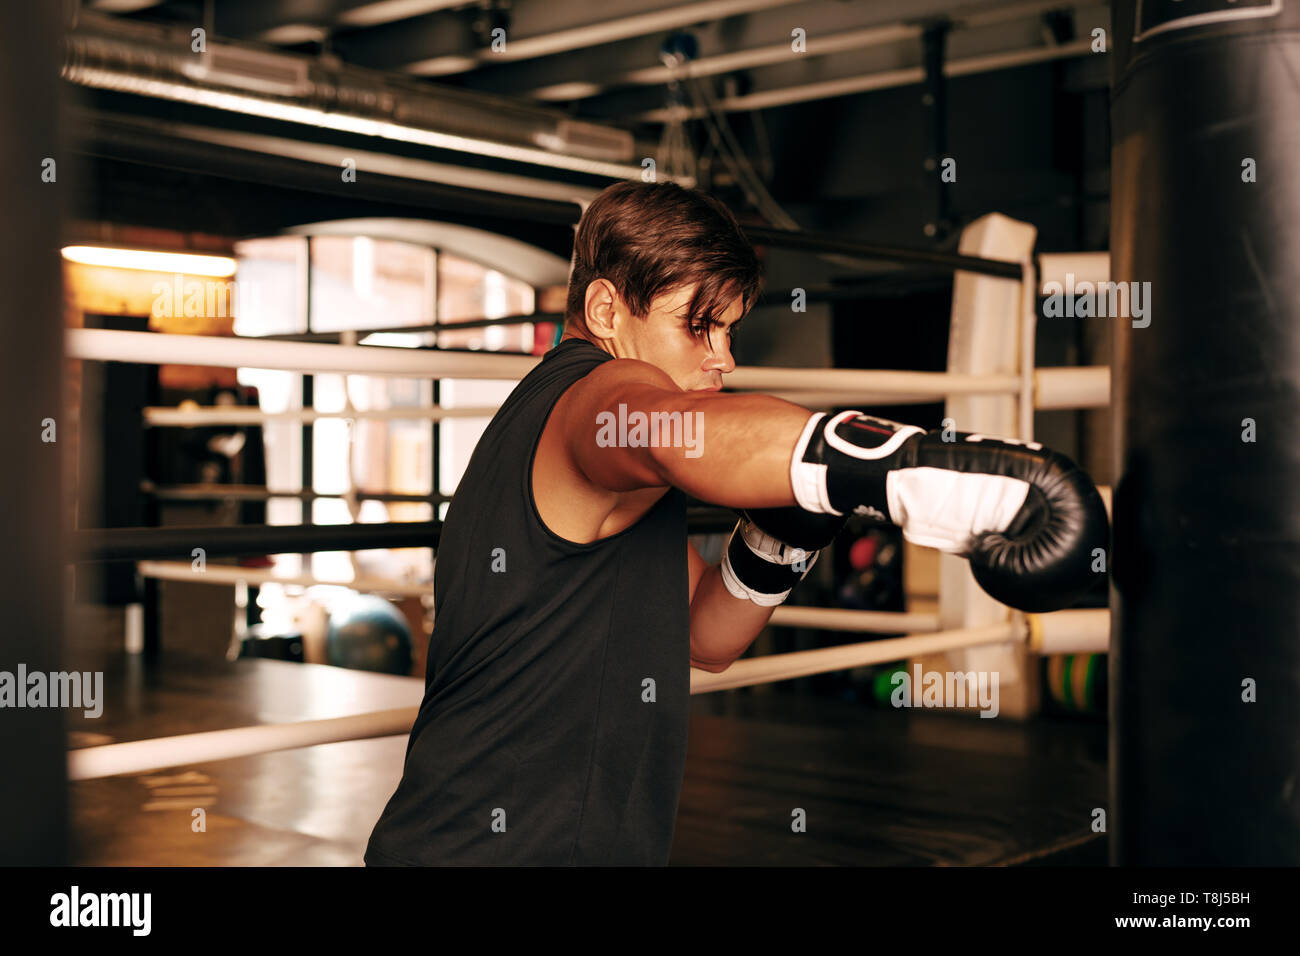 Muskulöse Athleten trainieren Sie im Fitnessraum auf einen Boxsack aus Leder Stockfoto